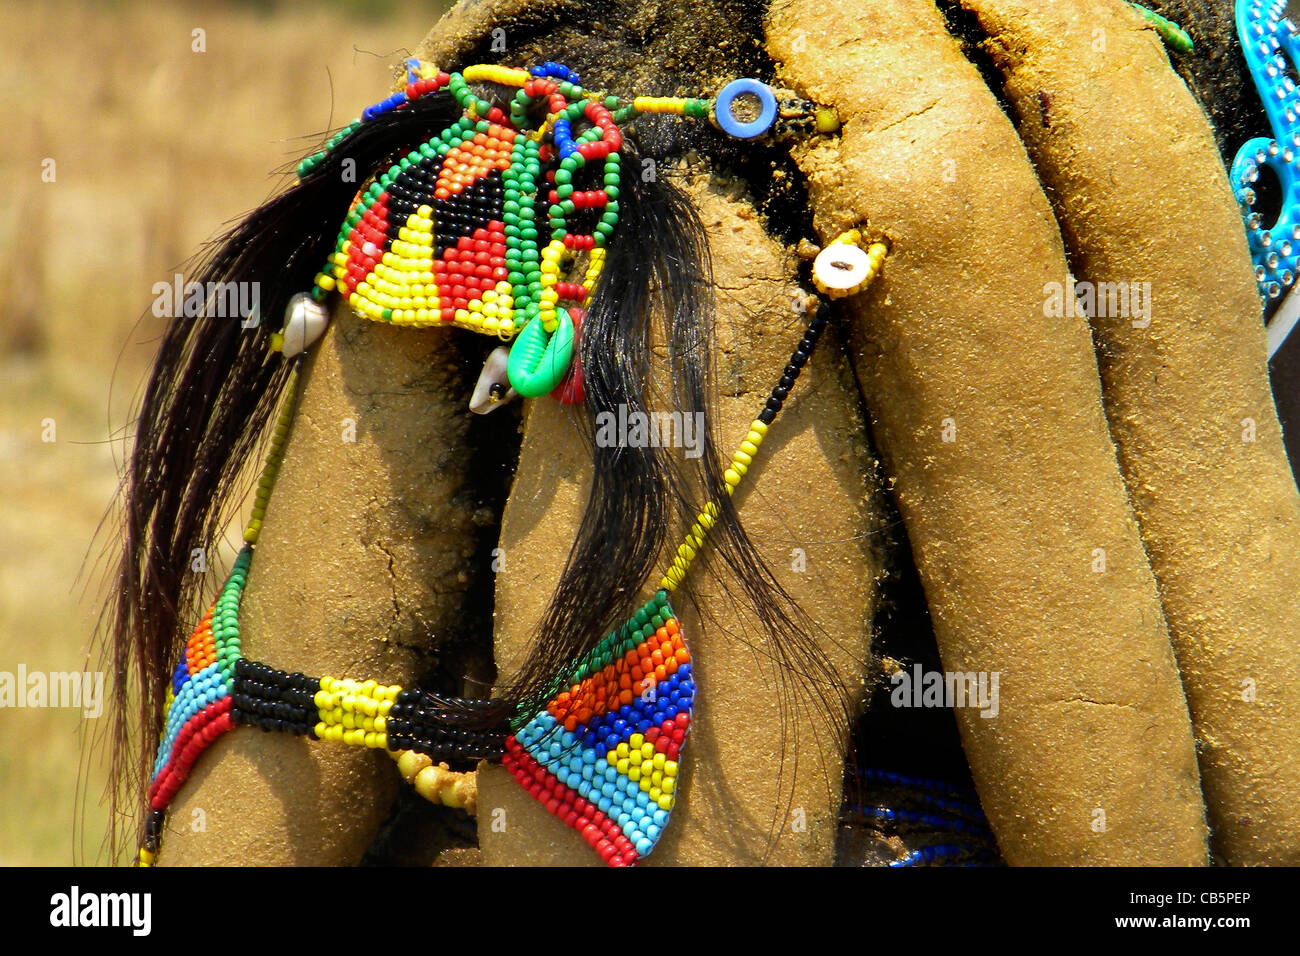 Mumuila Stamm, Lubango, Angola Stockfoto